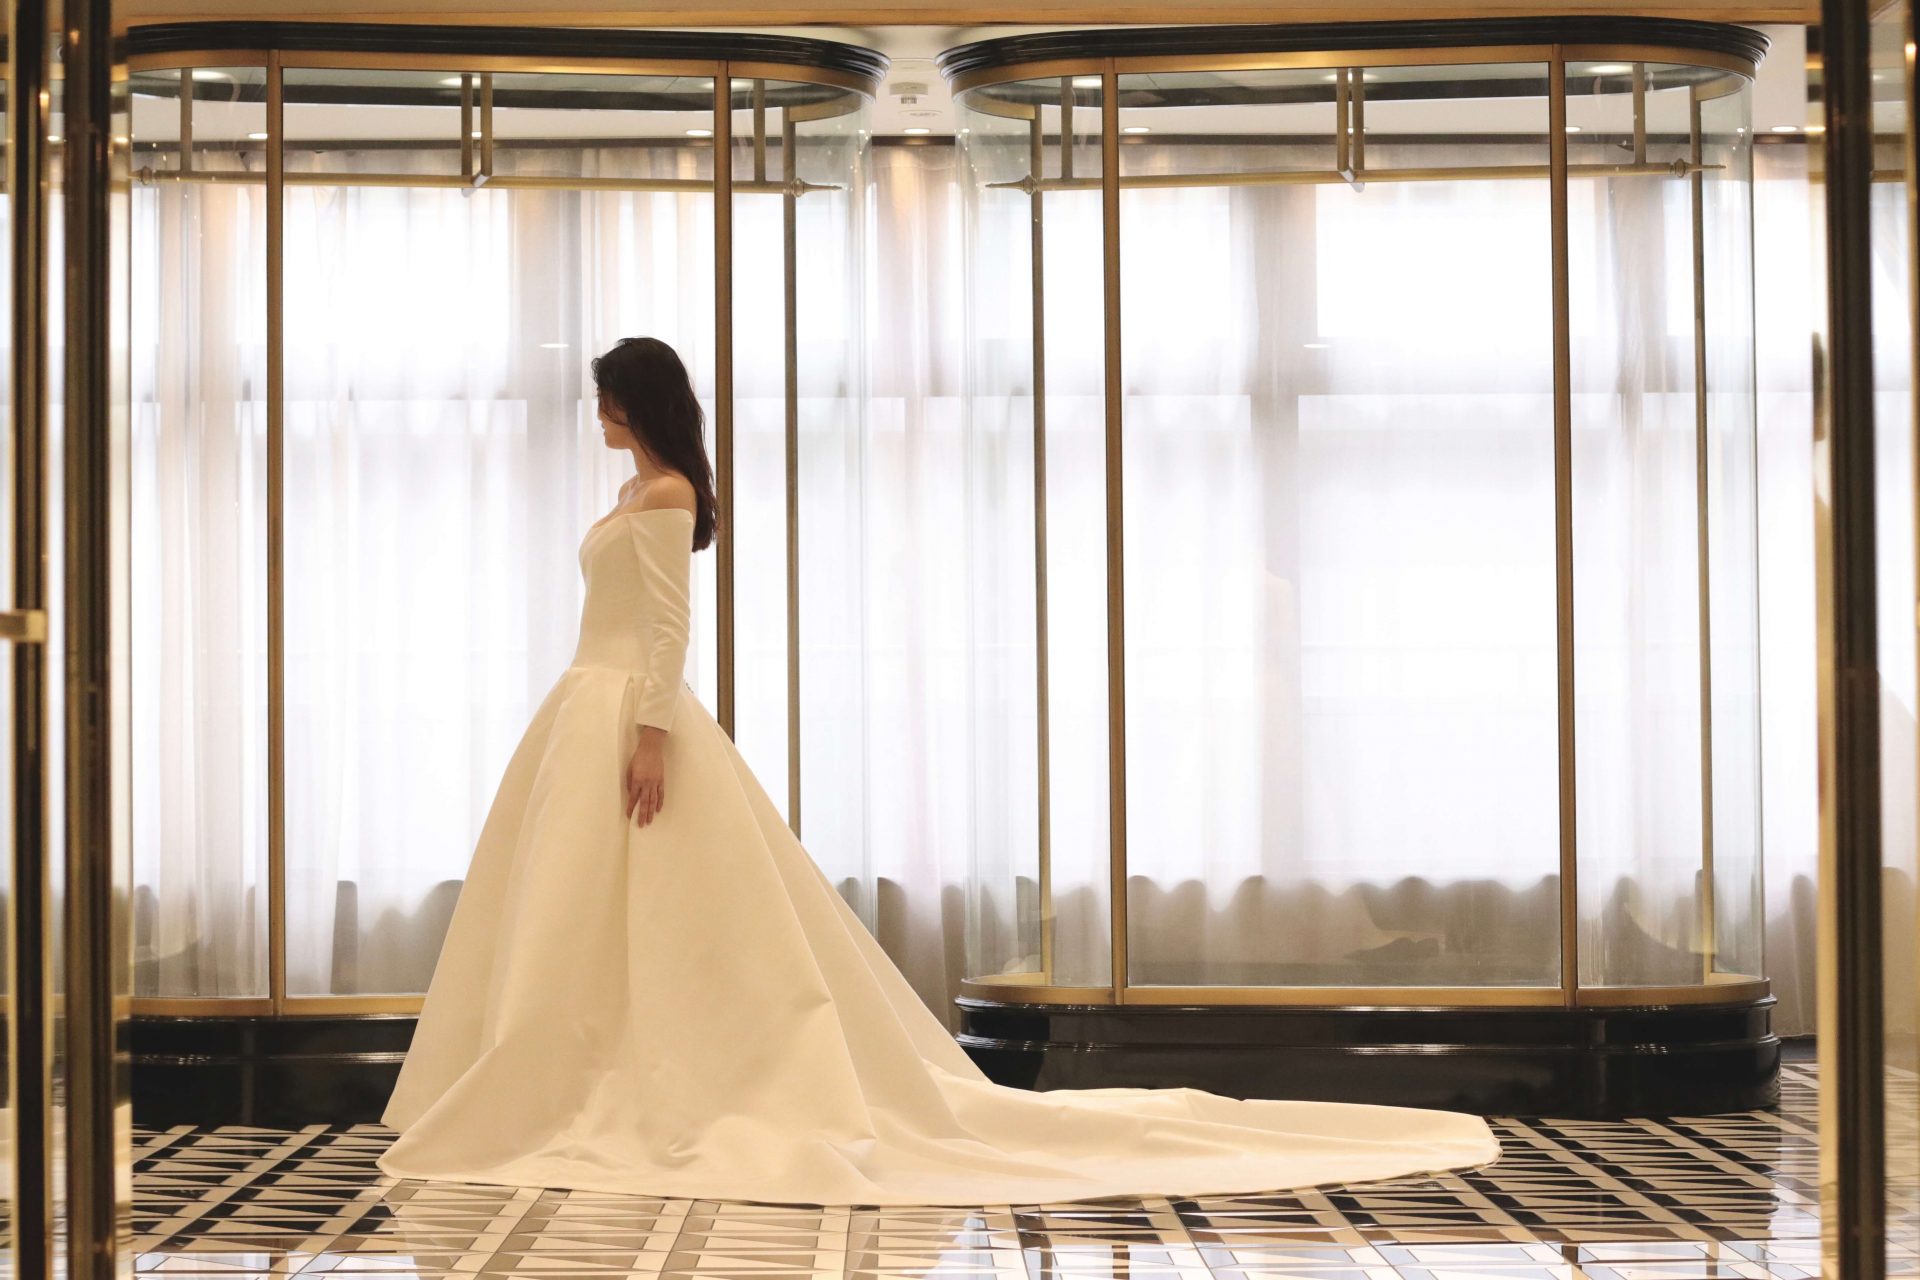 光沢のある上質なダッチェスサテンの新作ウェディングドレスは、優美で存在感のある圧倒的な美しさで、THETREATDRESSING提携のパレスホテル東京で結婚式を挙げられる花嫁様にもお勧めしたい一着です